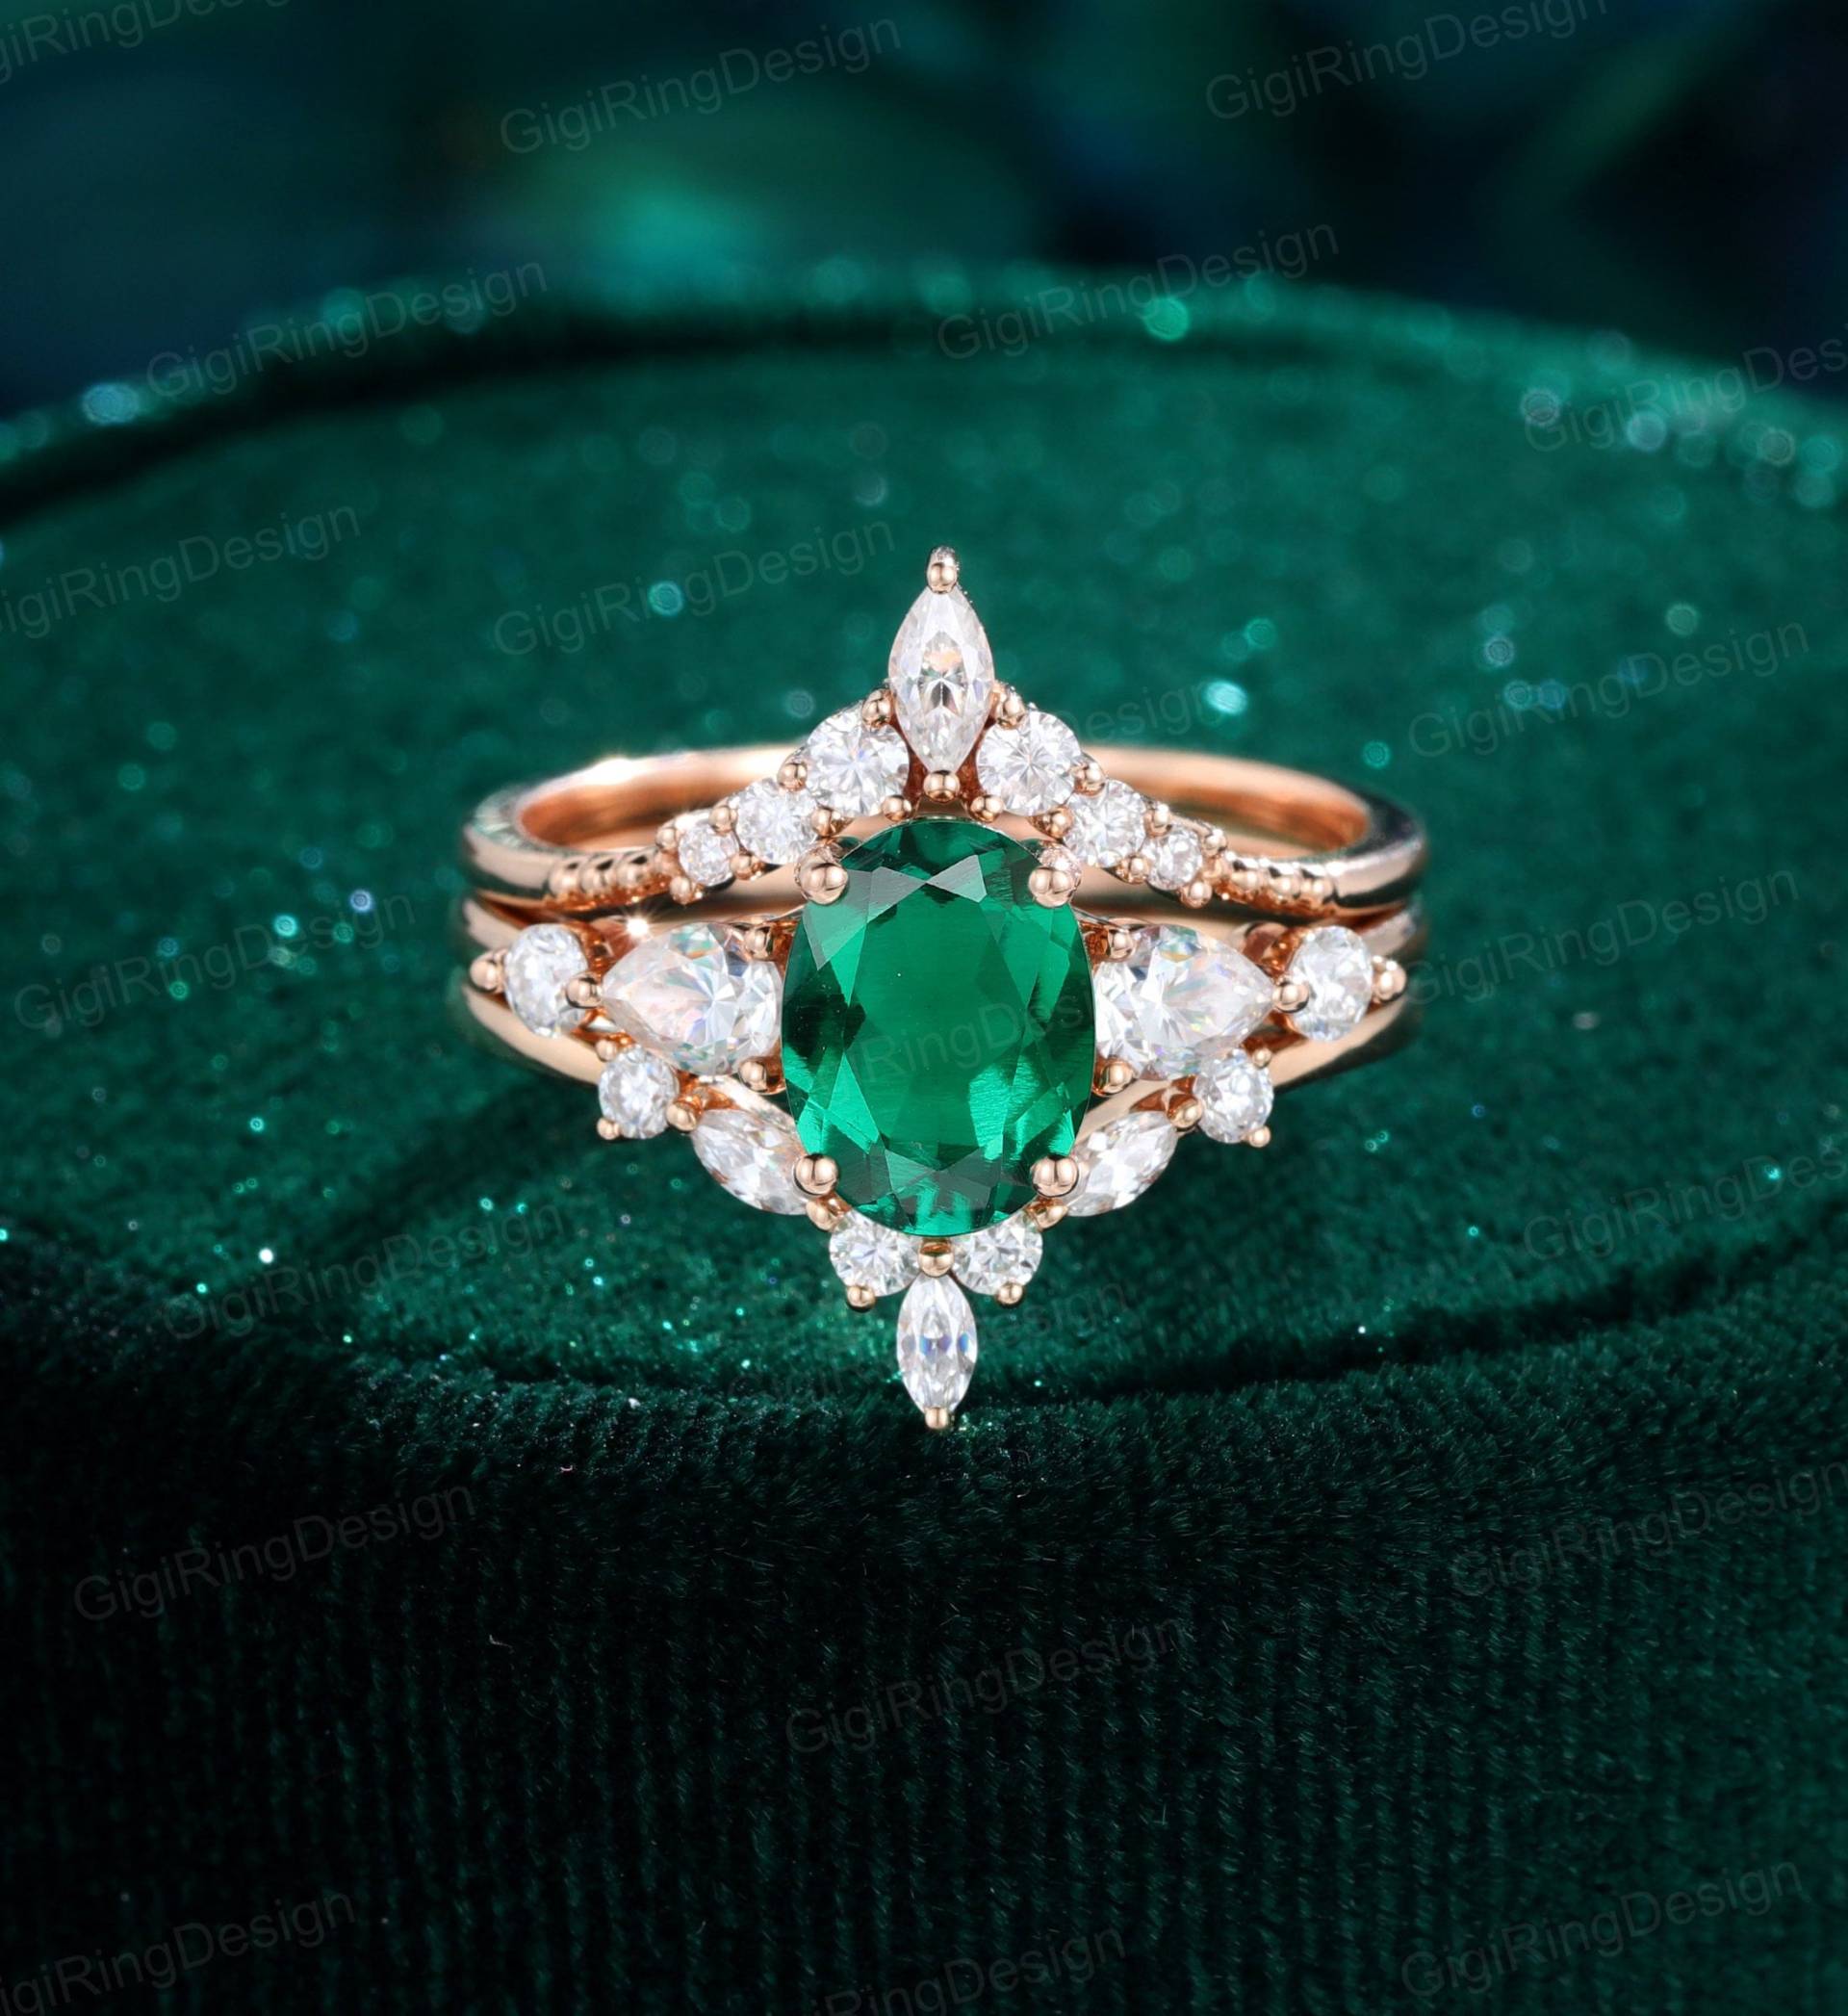 Oval Smaragd Verlobungsring Set Rosegold Moissanit Ring Unikat Vintage Marquise Braut Geschenk Für Frauen von GigiRingDesign